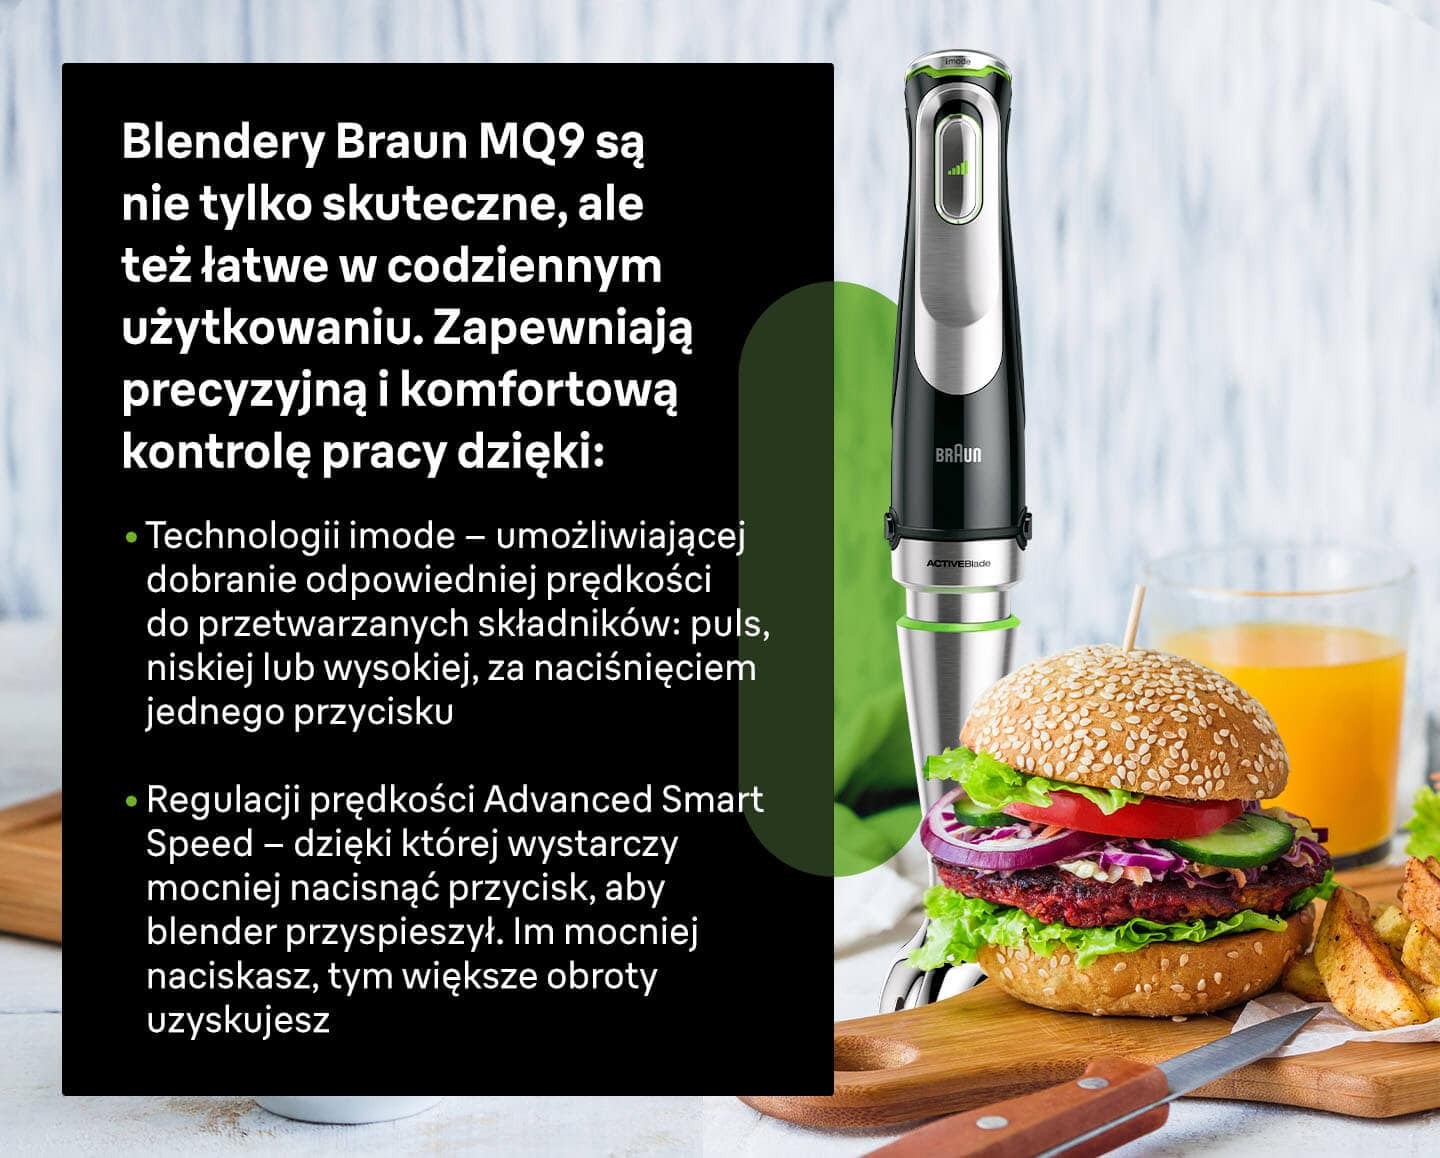 Blendery Braun MQ9 są nie tylko skuteczne, ale też łatwe w codziennym użytkowaniu. Zapewniają precyzyjną i komfortową kontrolę pracy dzięki: Technologii imode oraz regulacji prędkości Advanced Smart Speed. - infografika